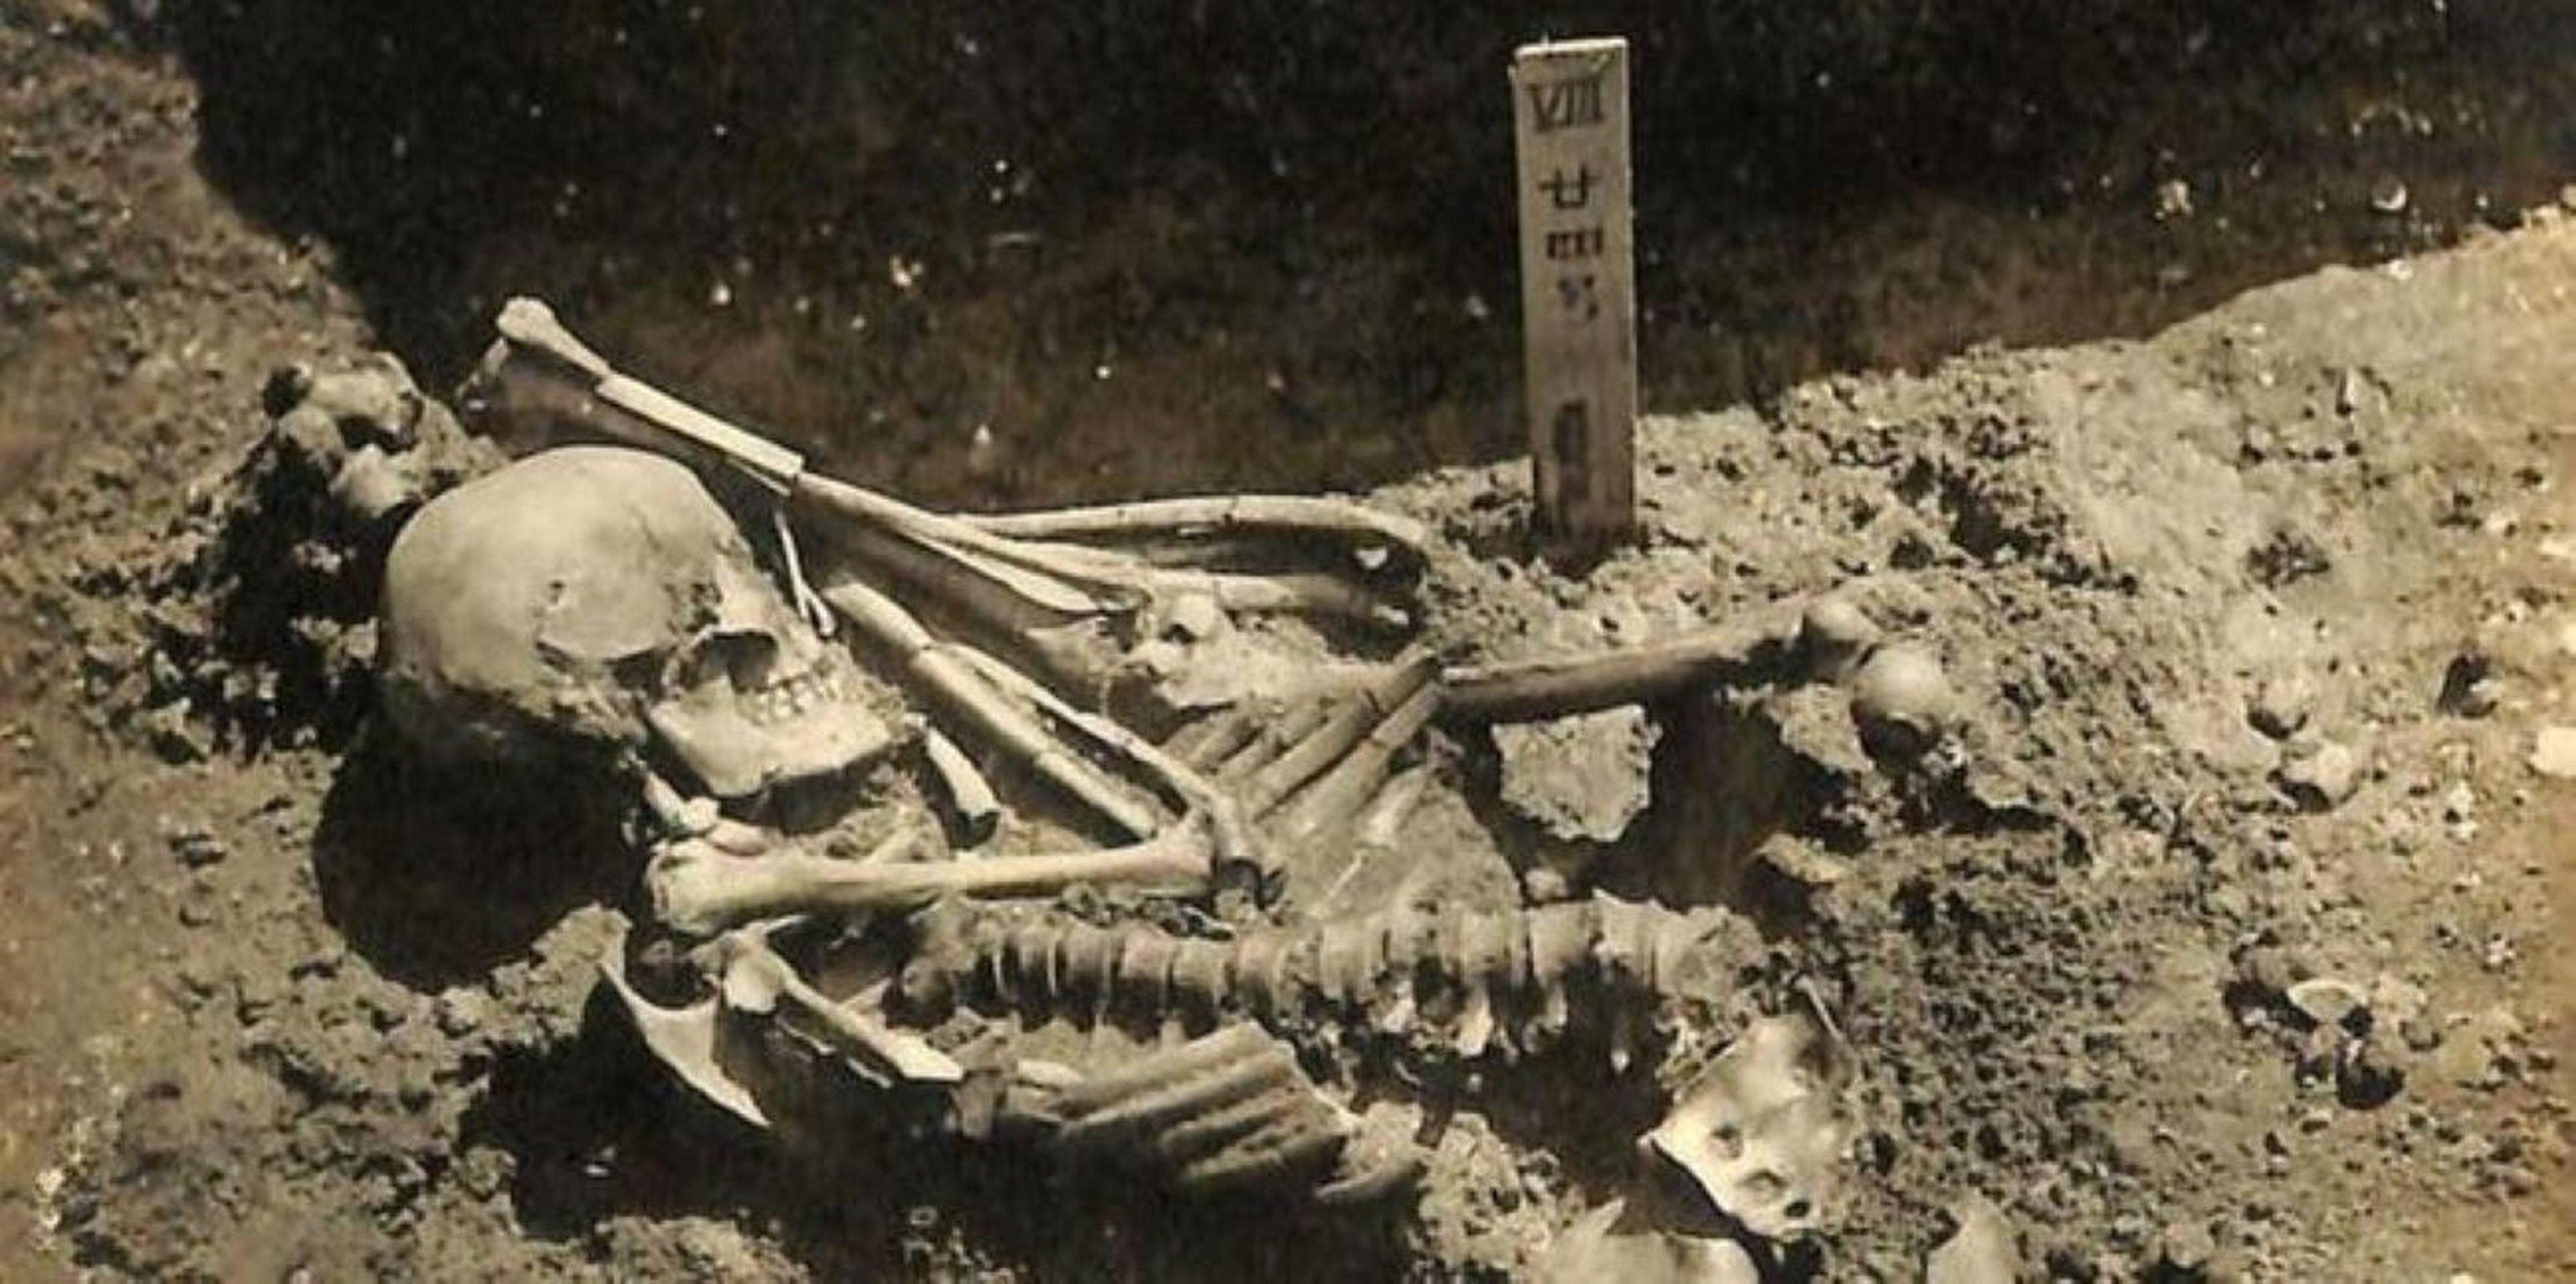 Fotografía original de la excavación del Tsukumo nº 24.